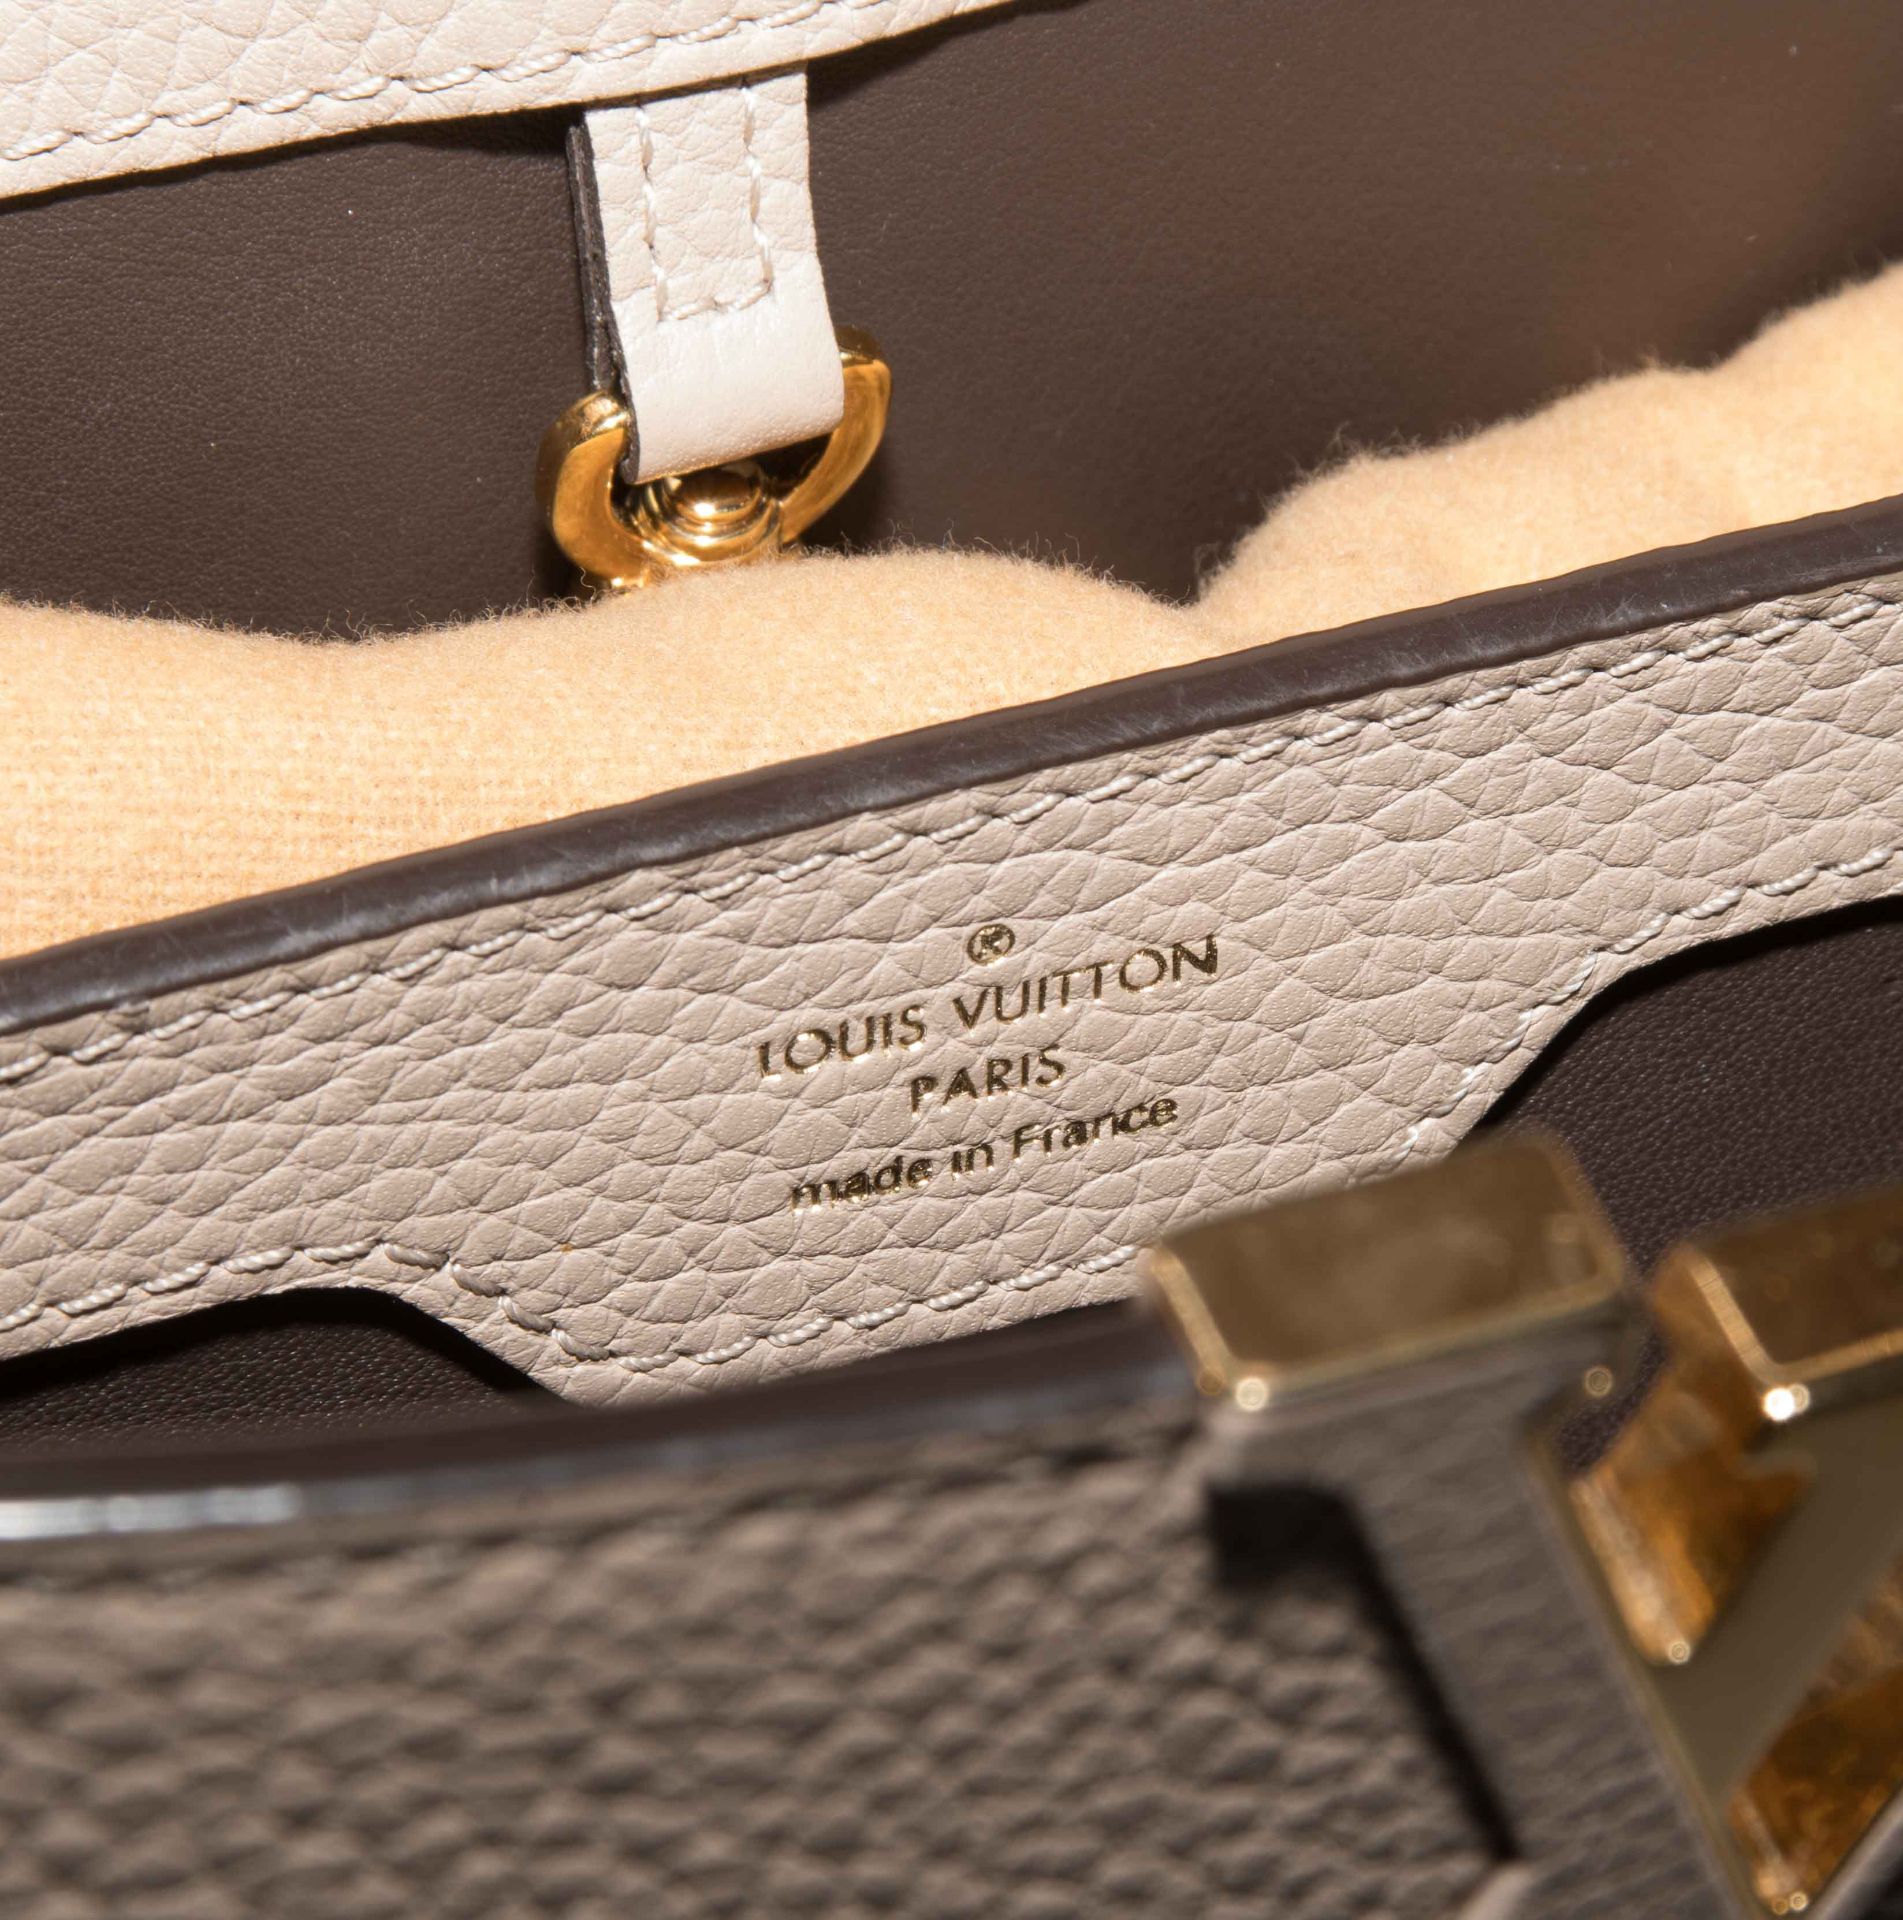 Louis Vuitton, Handtasche "Capucines" - Image 13 of 17